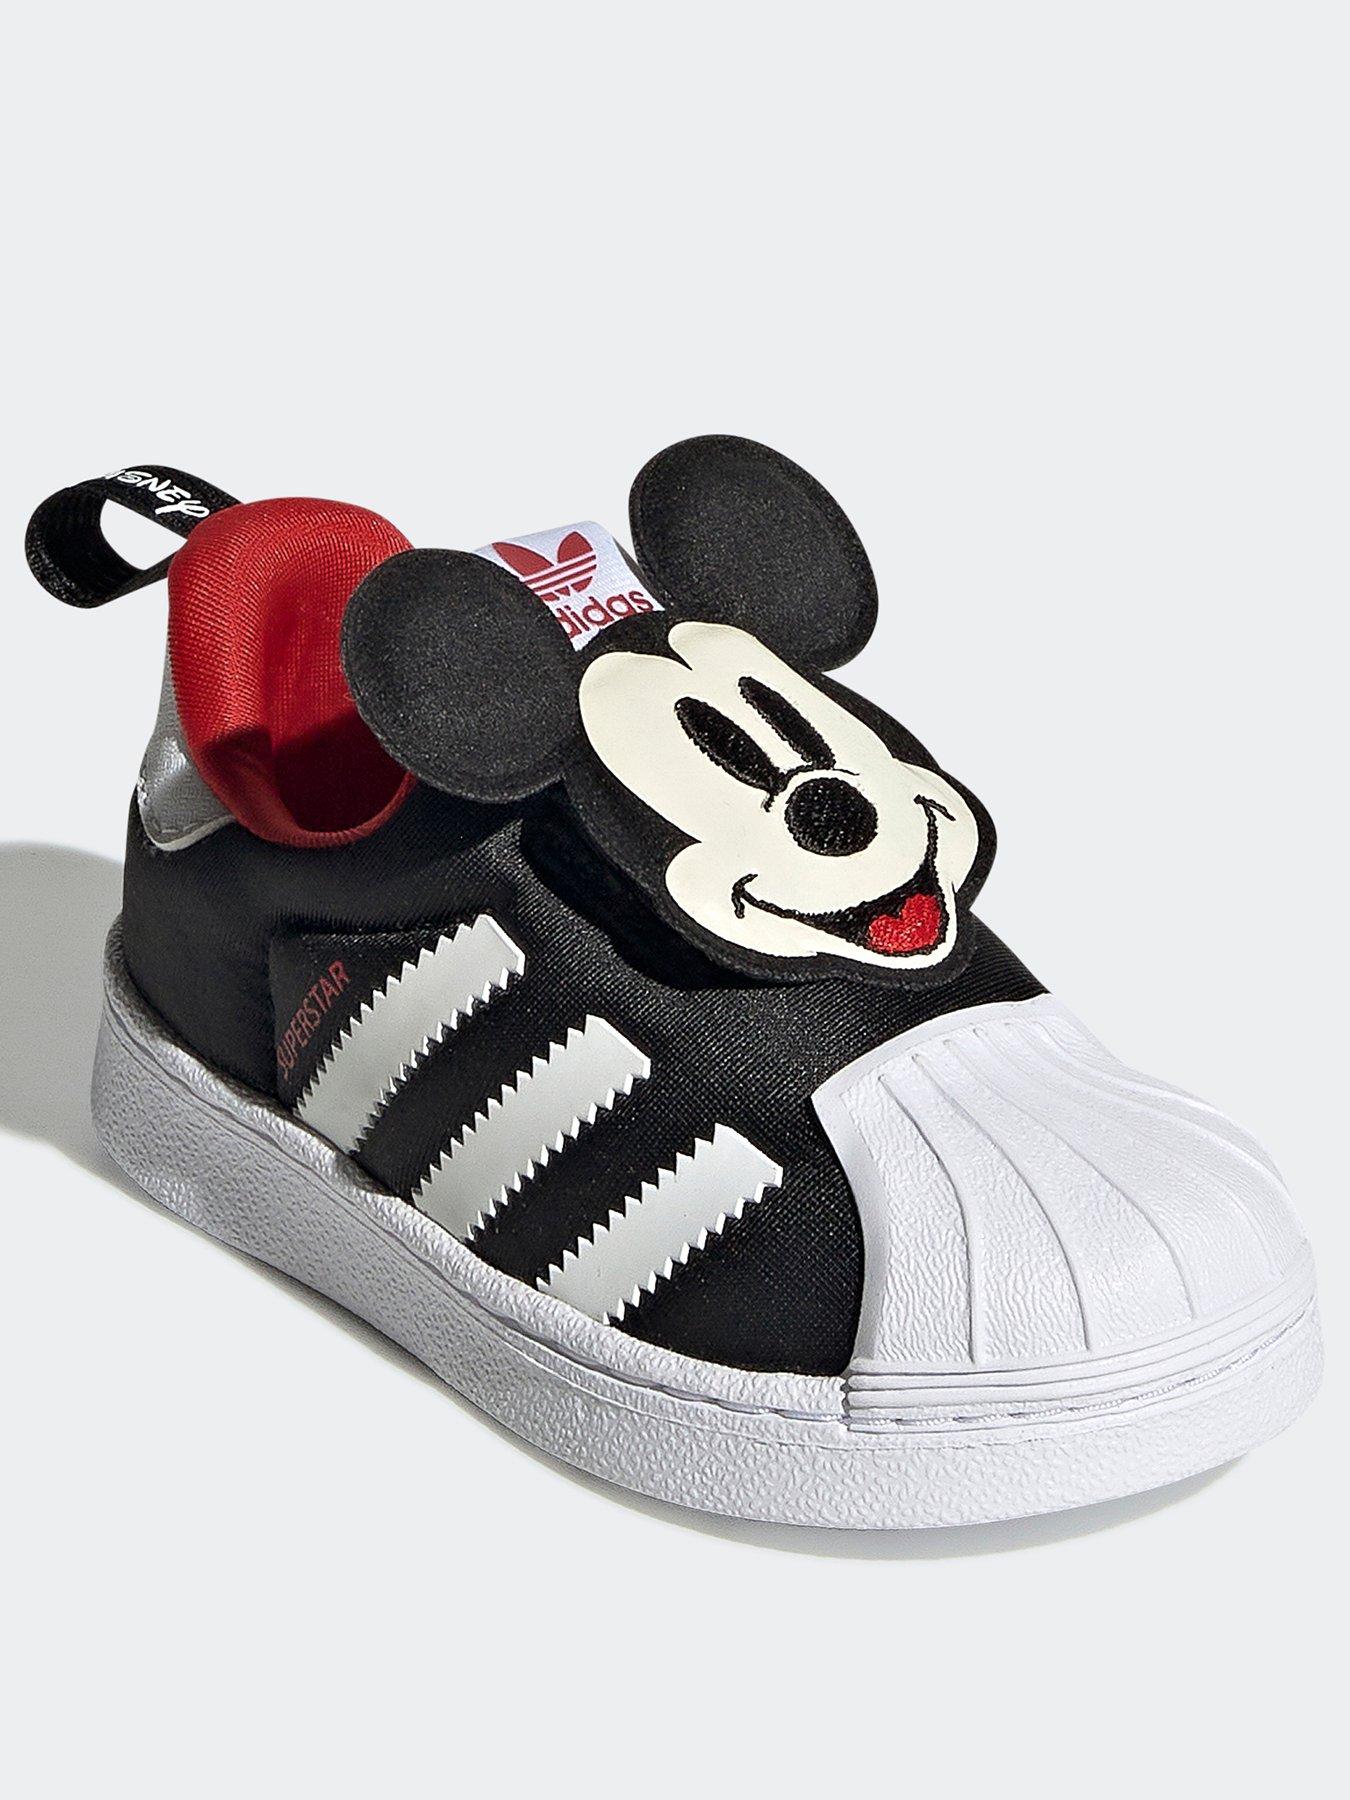  Disney Superstar 360 Shoes